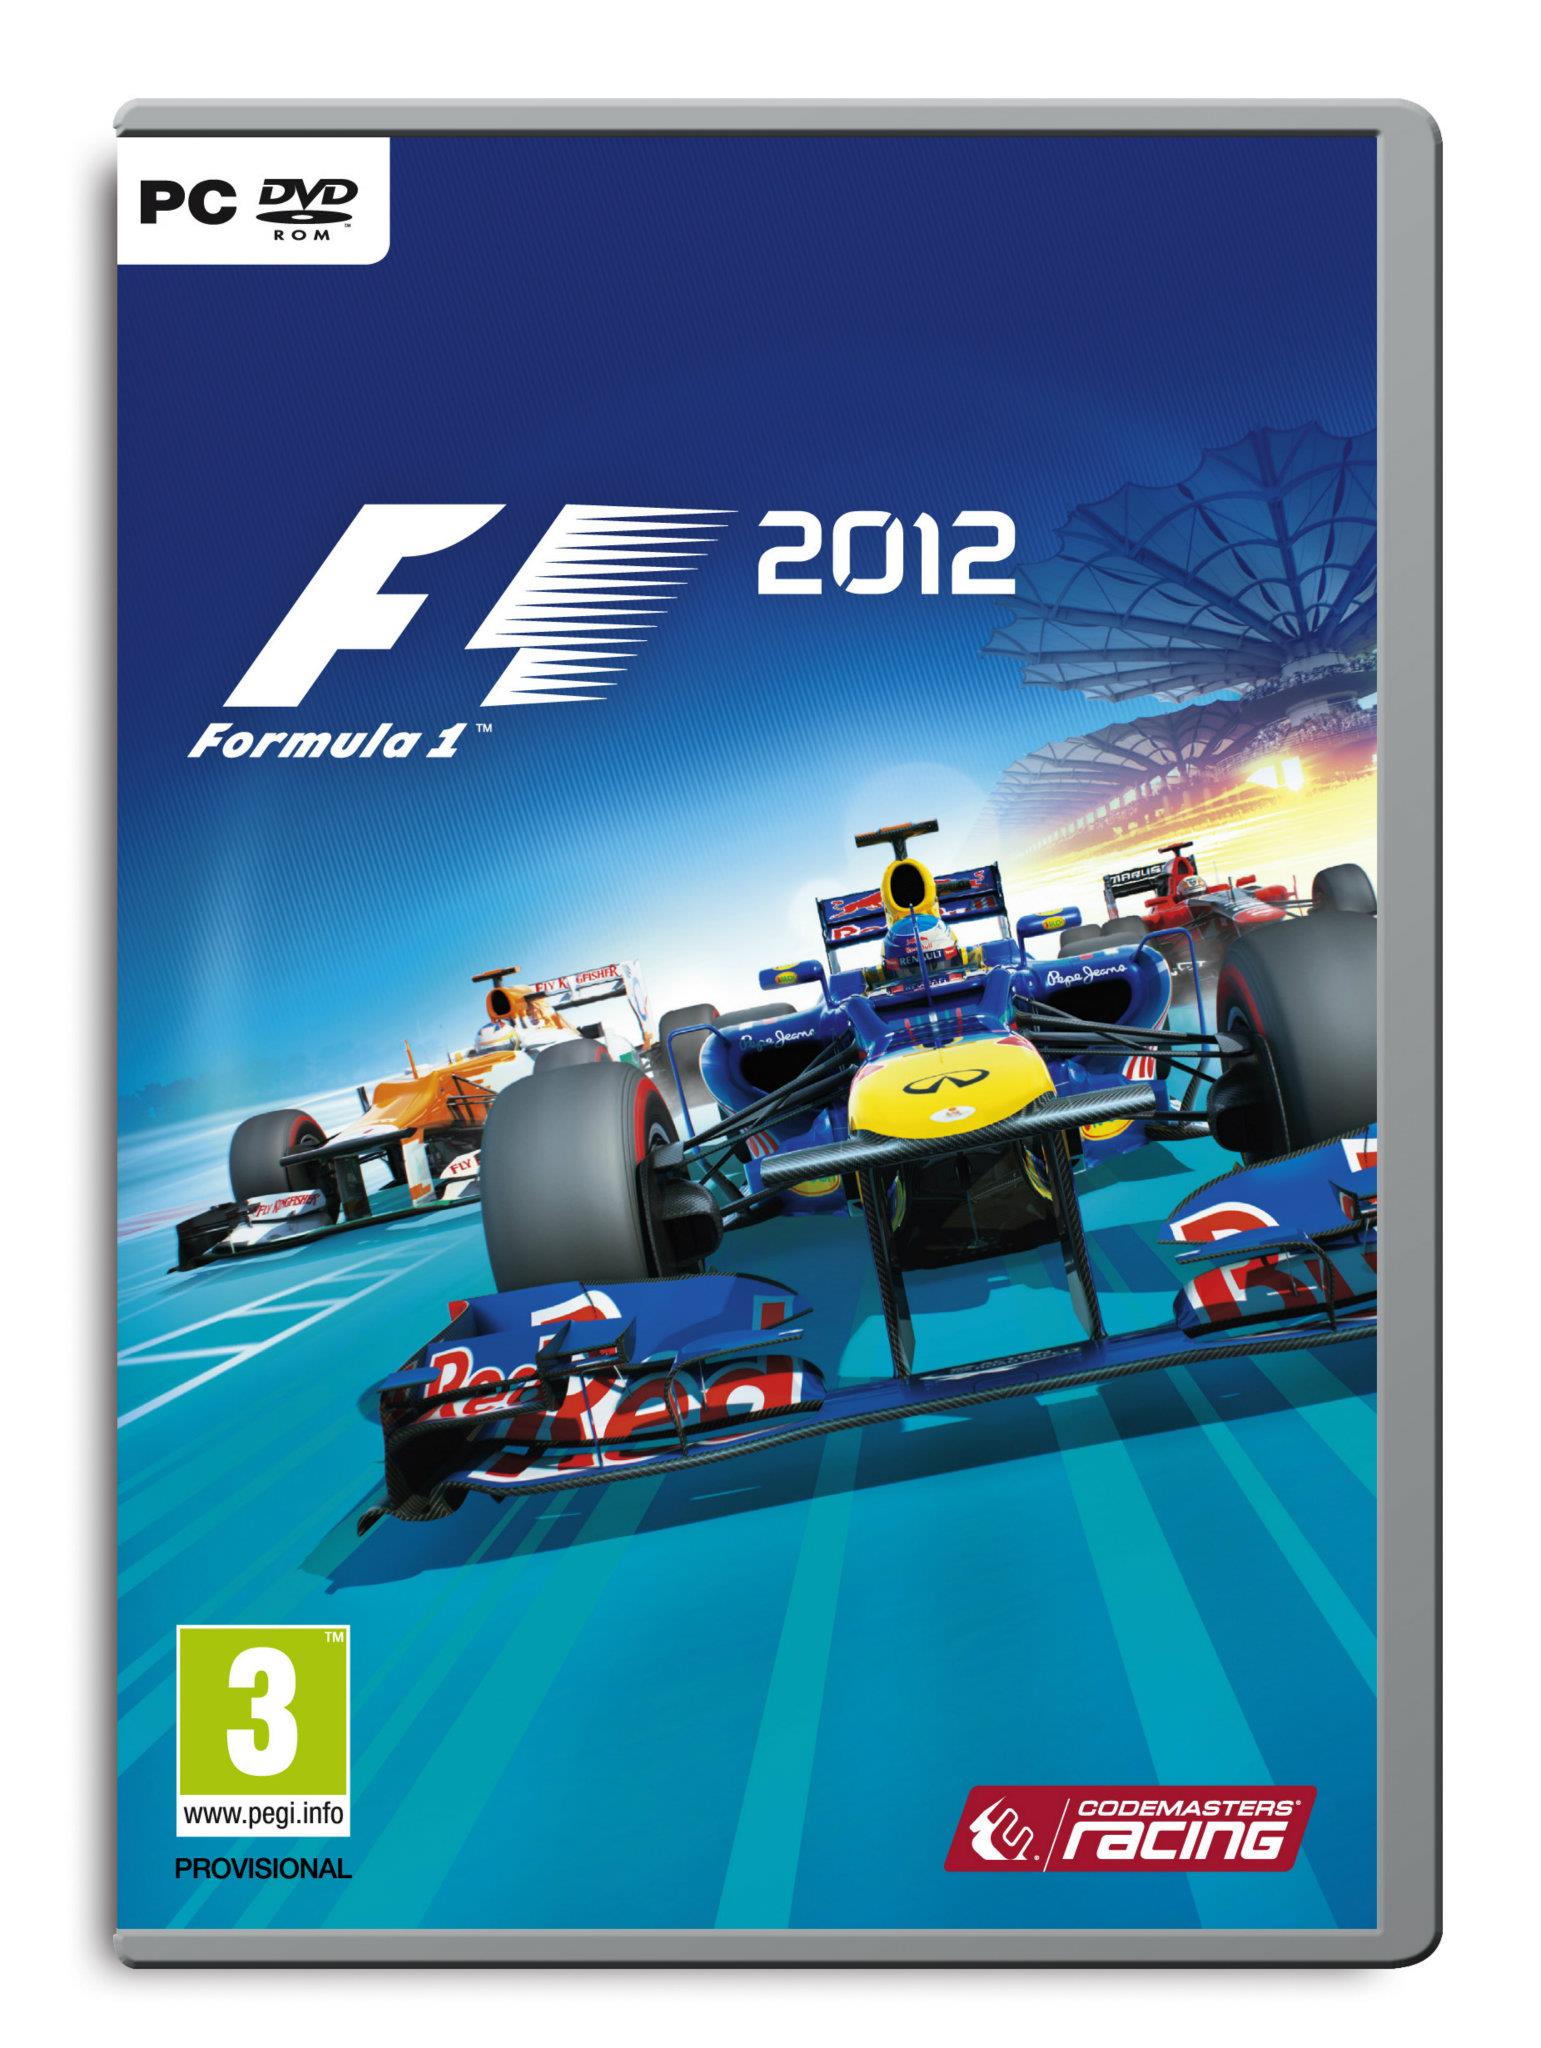 Rozhodněte o obalu krabičky F1 2012 67259